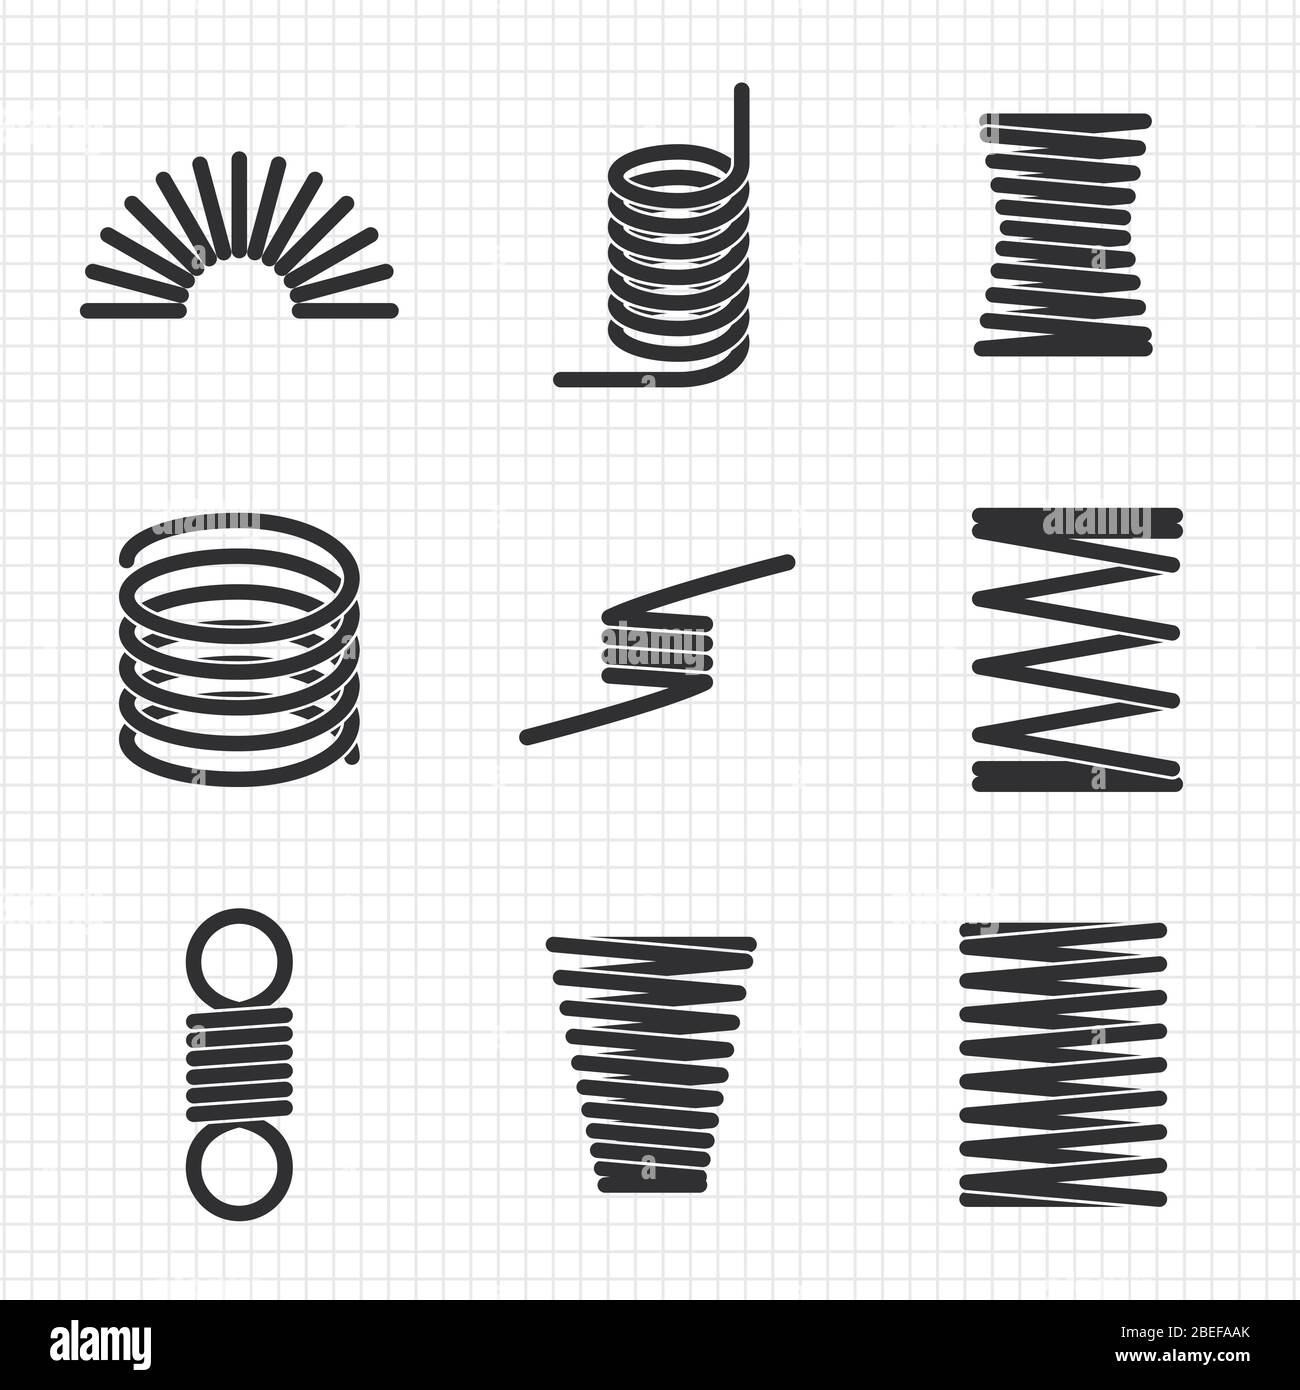 Spirale flessibile in filo d'acciaio a molla sulla pagina del notebook. Illustrazione vettoriale Illustrazione Vettoriale